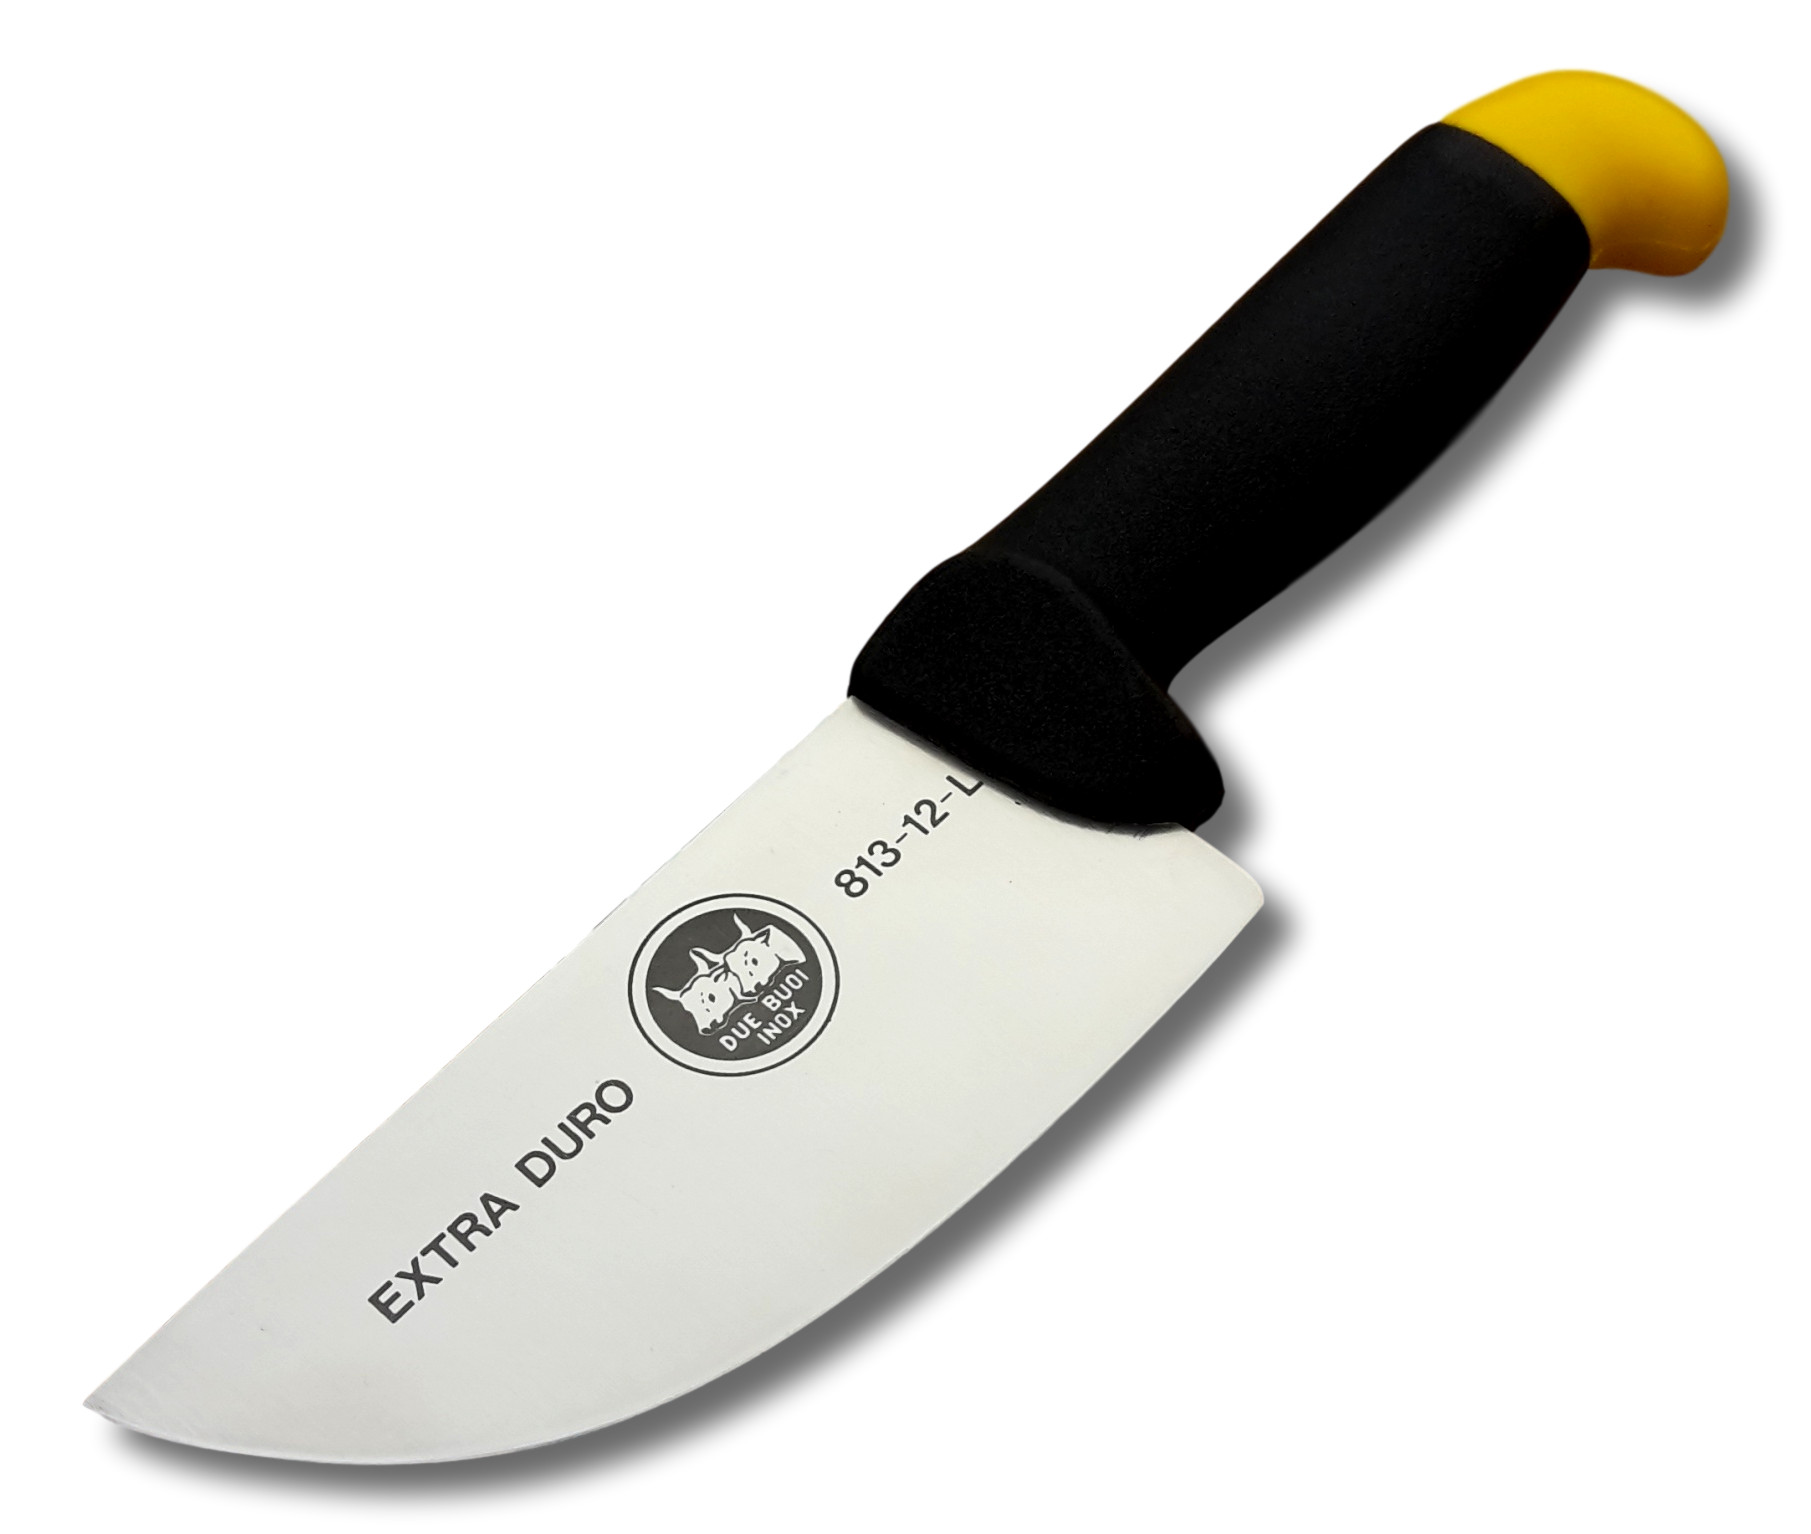 Il coltello Due Buoi da affettare largo per macellaio è uno strumento  professionale e di qualità, ideale per tagliare con precisione e facilità  la carne cruda. La sua lama in acciaio inossidabile